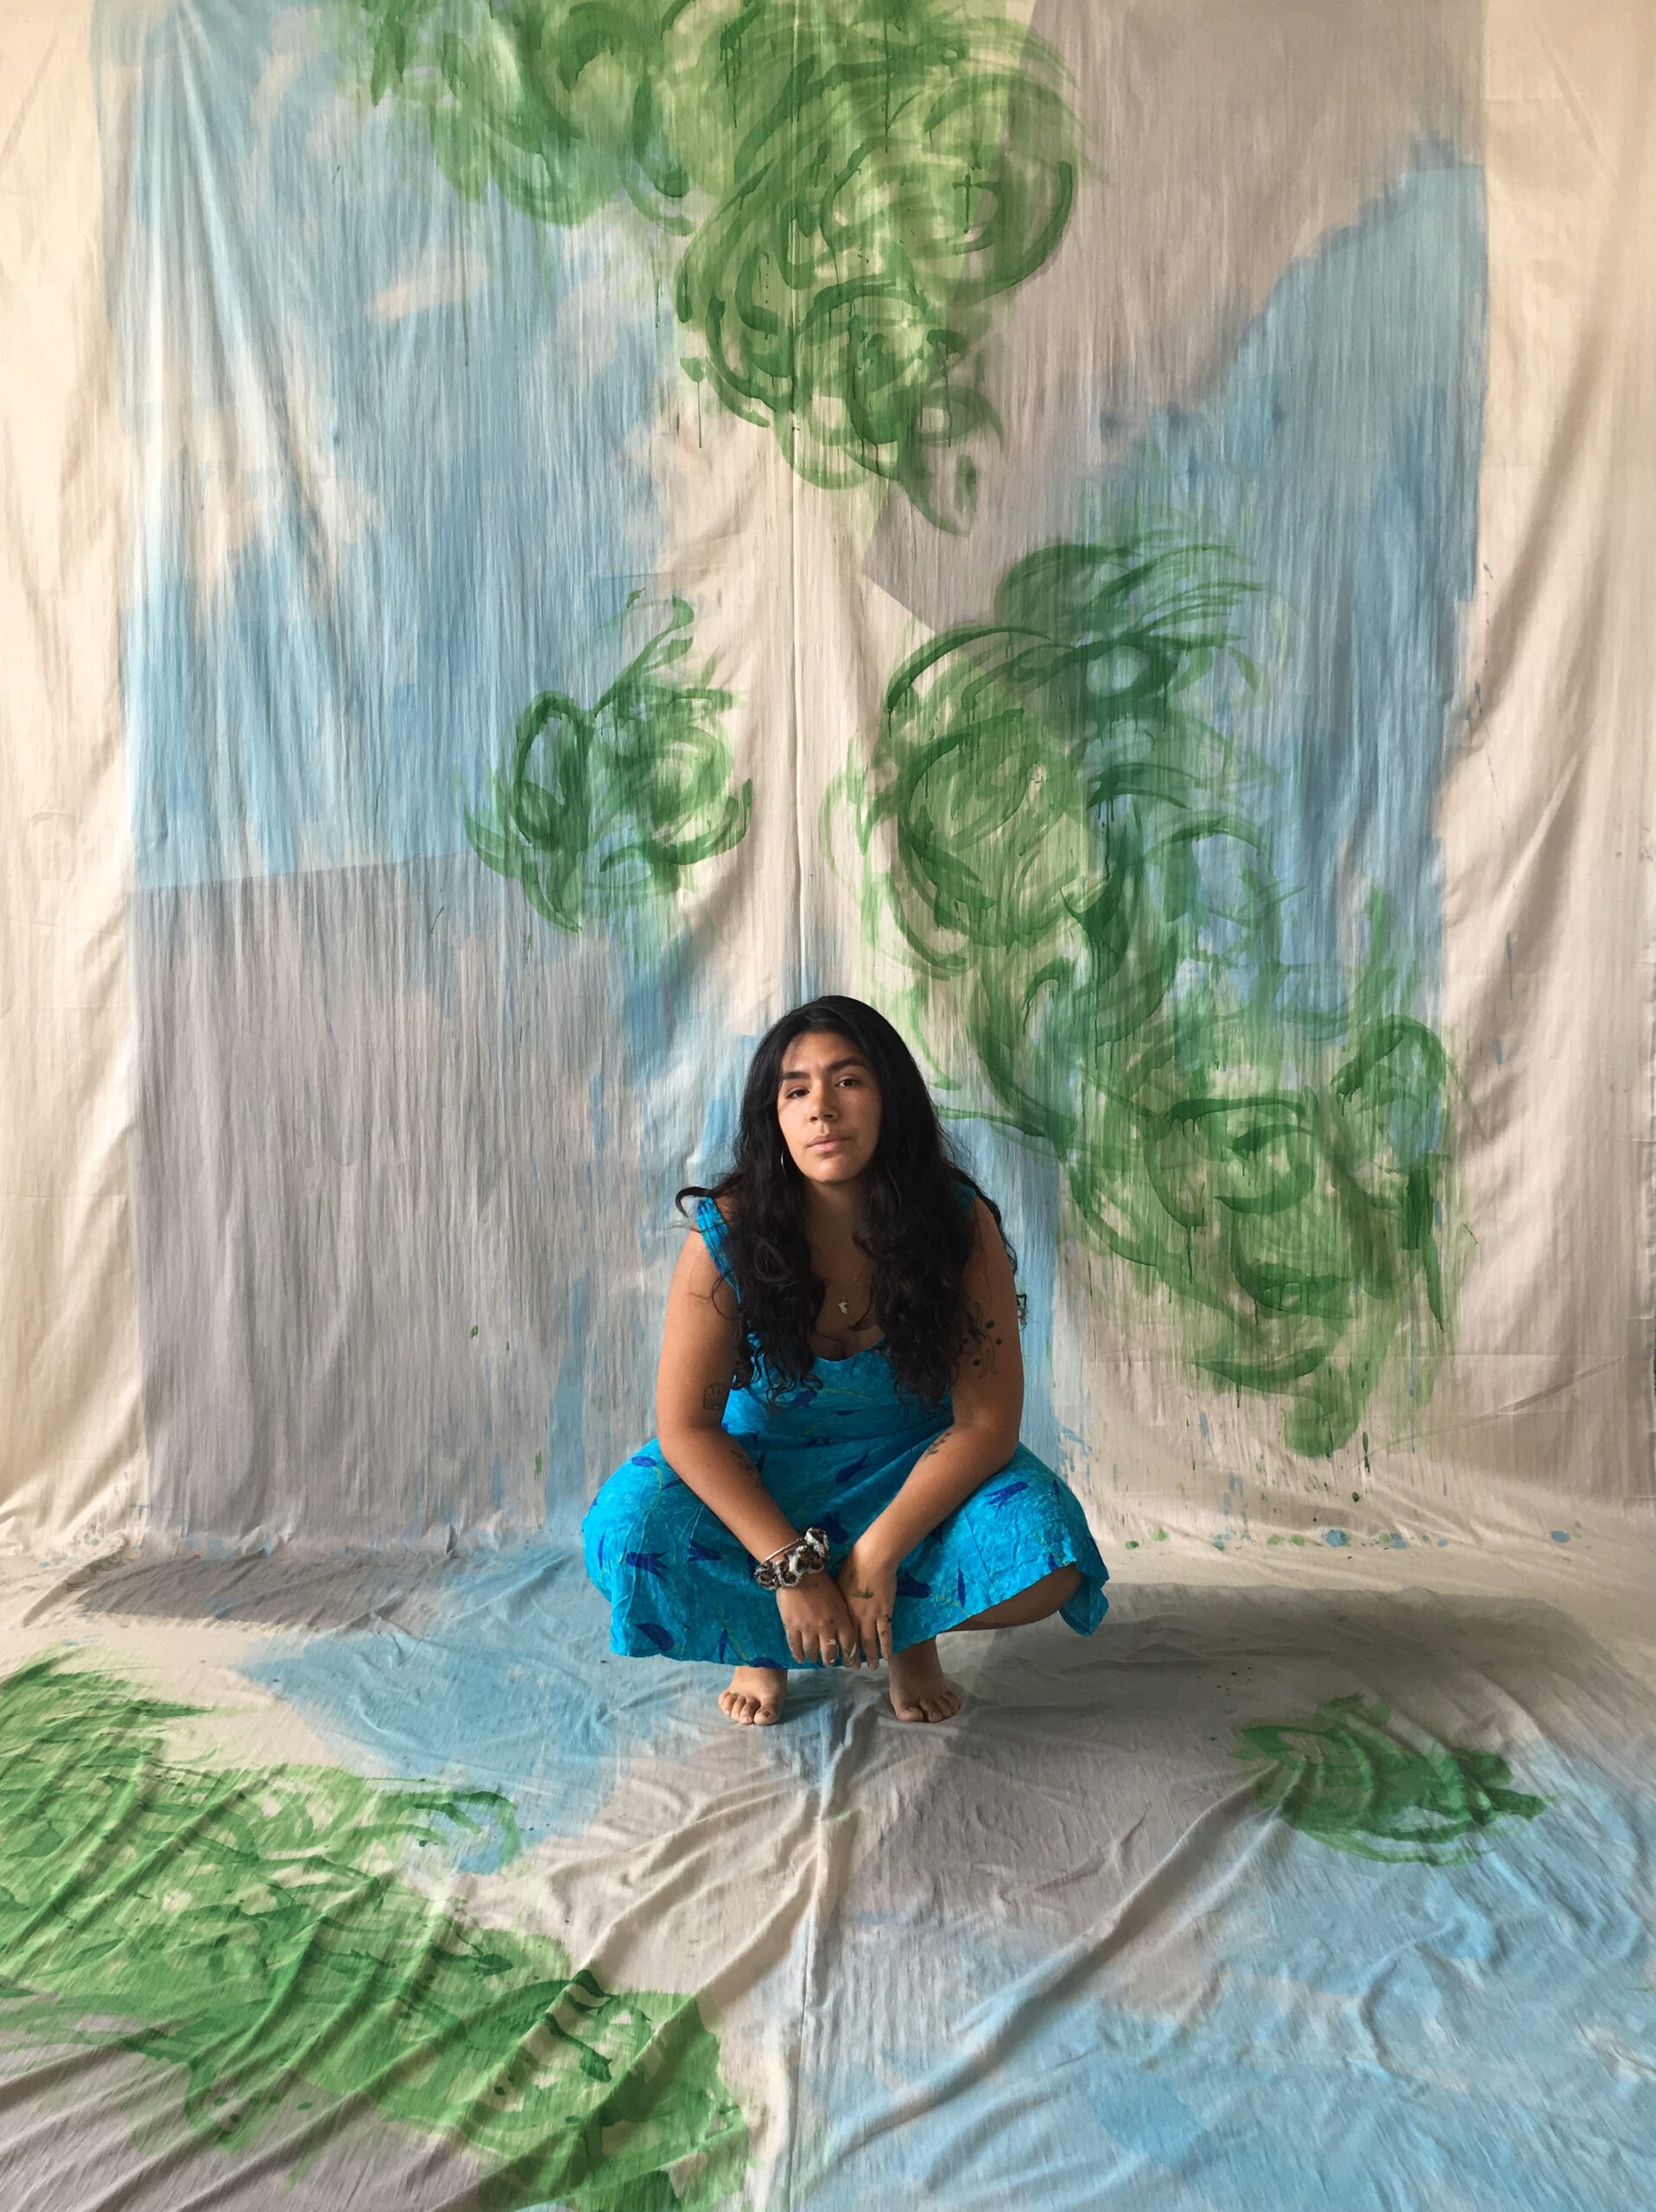 Porträtfoto von Ximena Ferrer Pizarro. Die Künstlerin sitzt in der Hocke vor einer bemalten Stoffbahn und schaut in die Kamera.